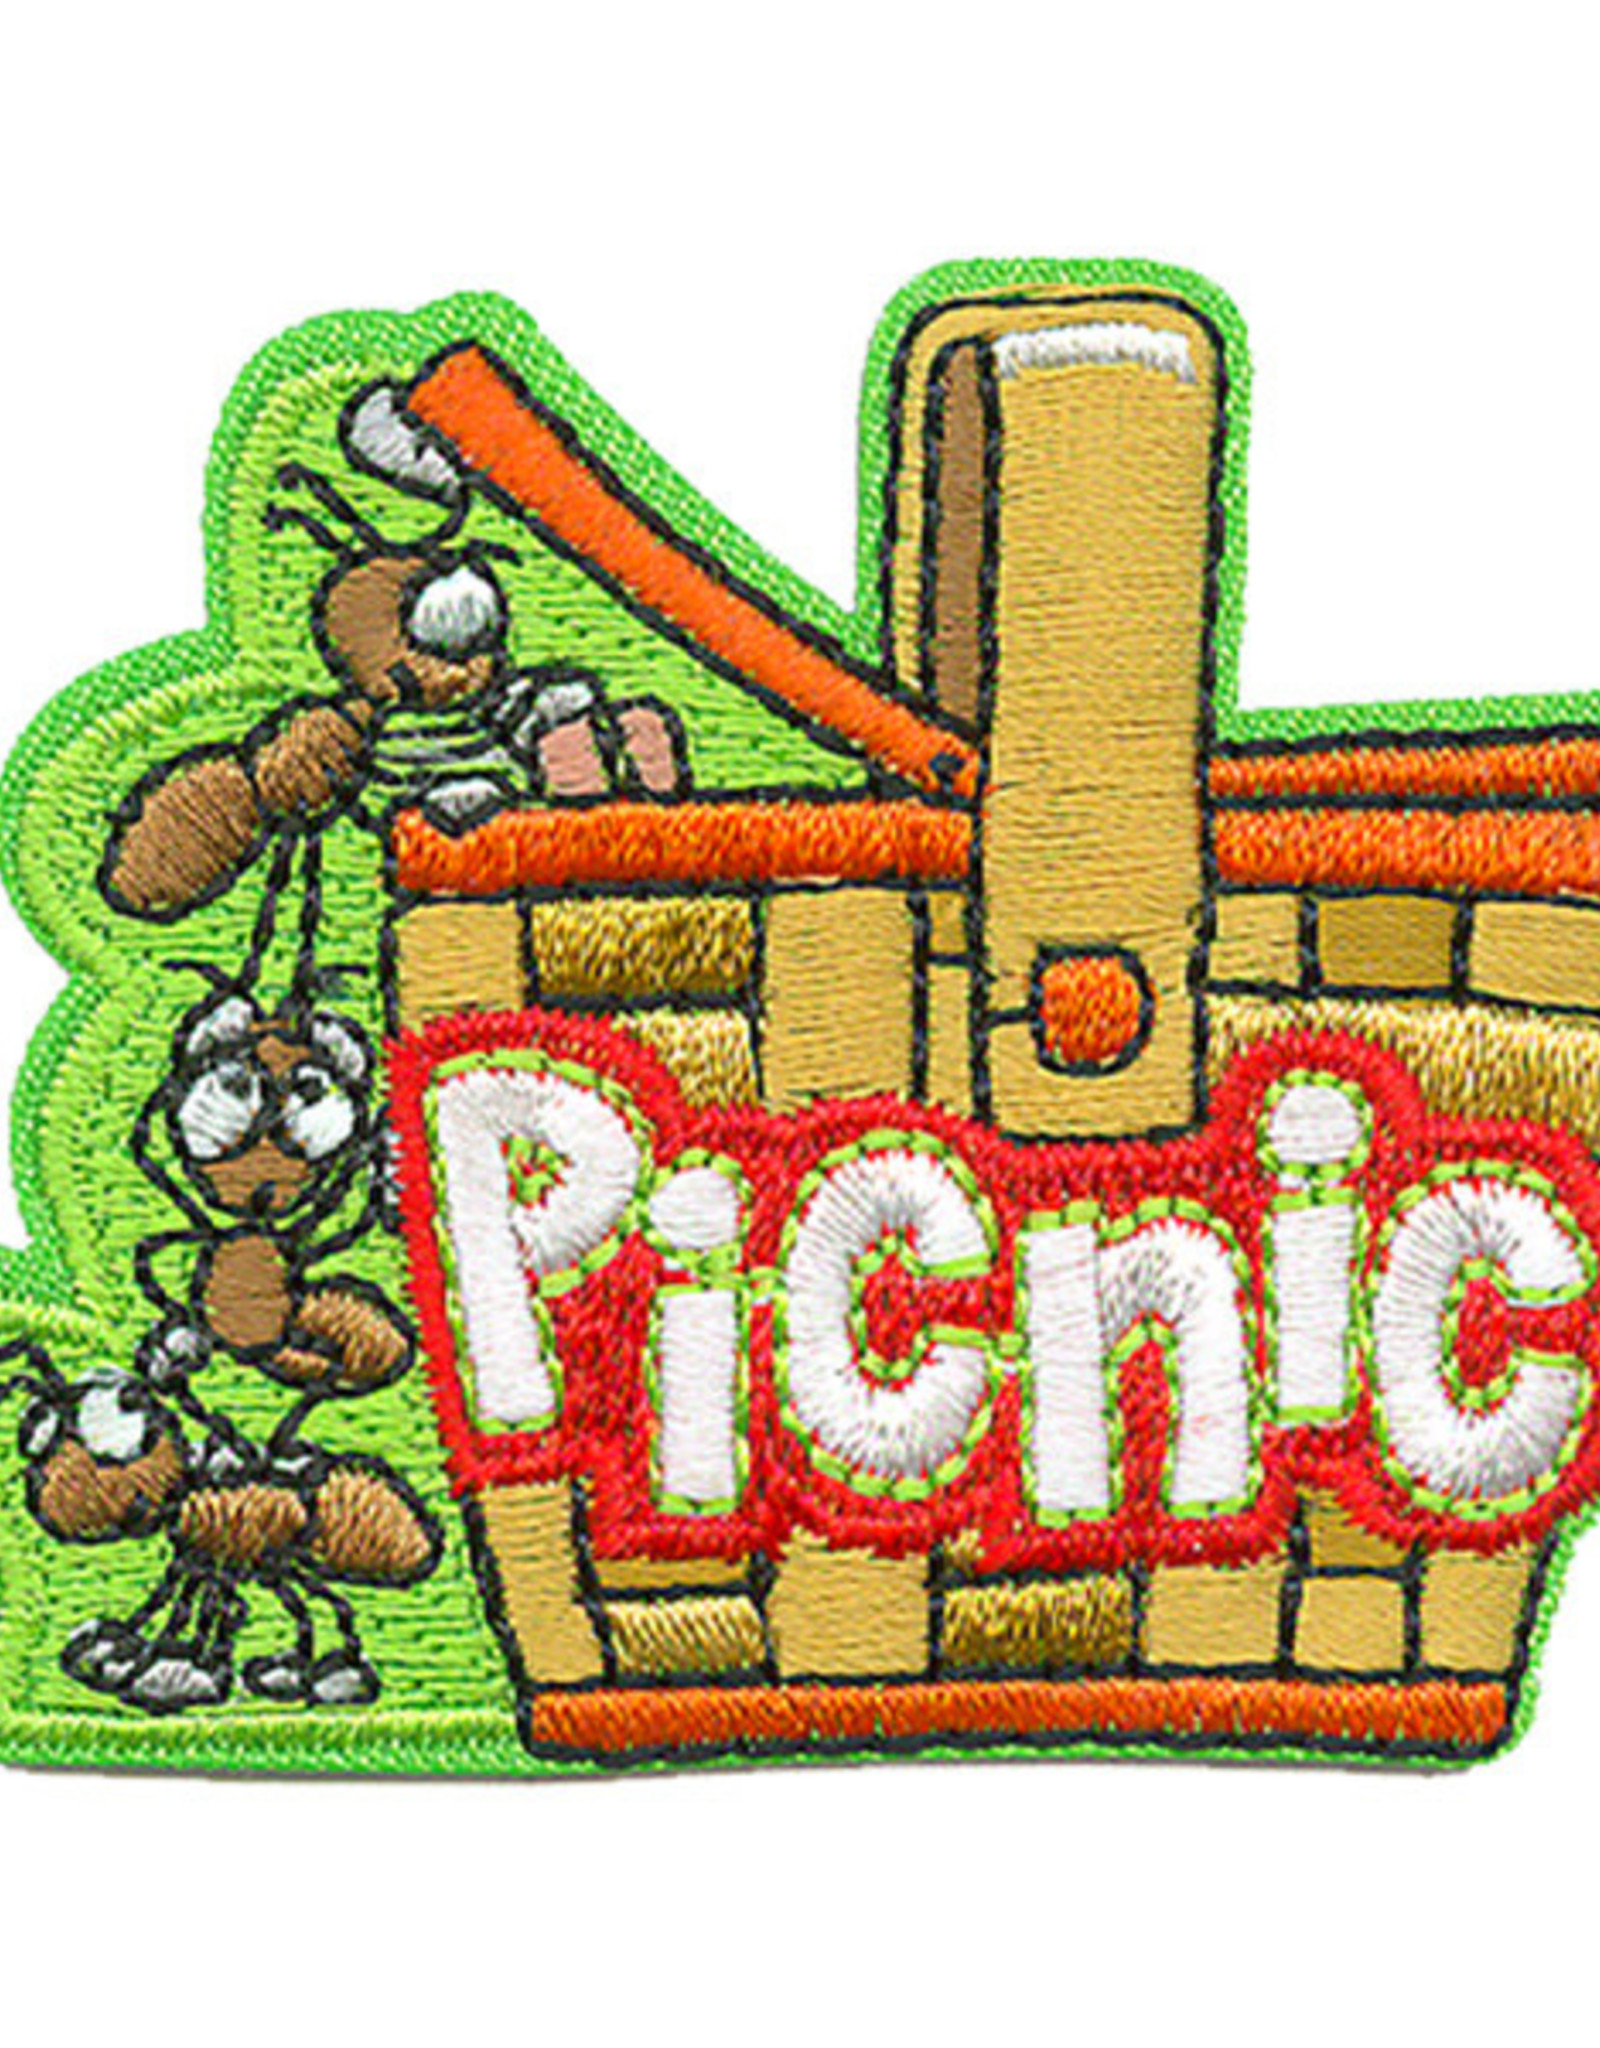 *Picnic Basket w/ Ants Fun Patch